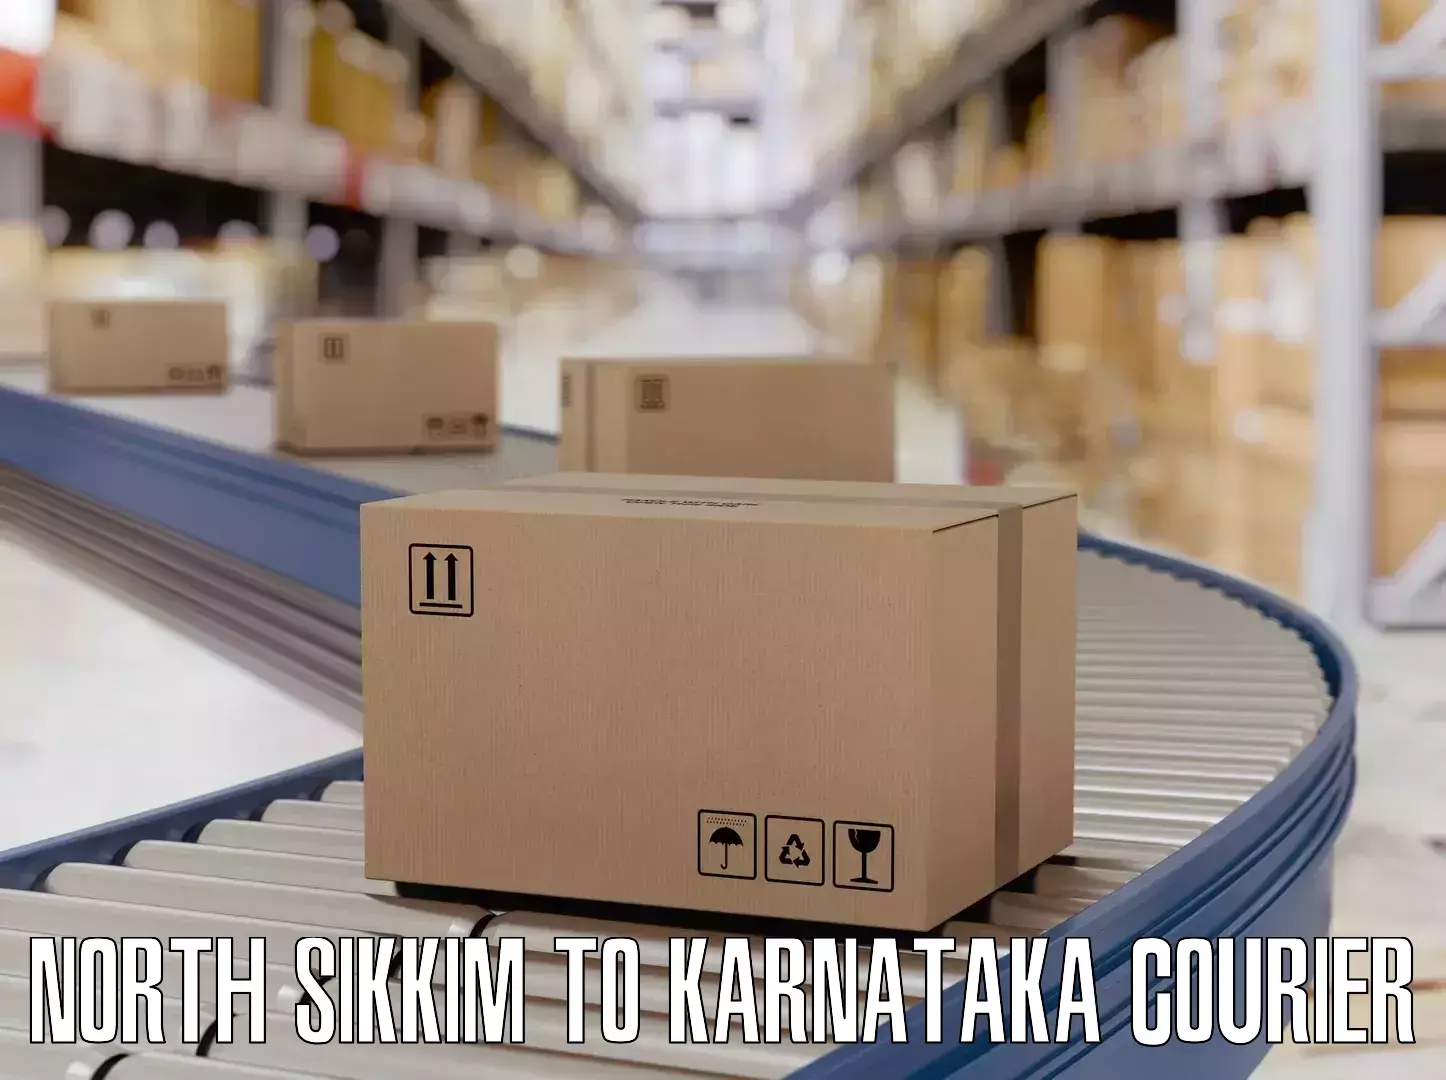 Luggage delivery optimization North Sikkim to Dakshina Kannada